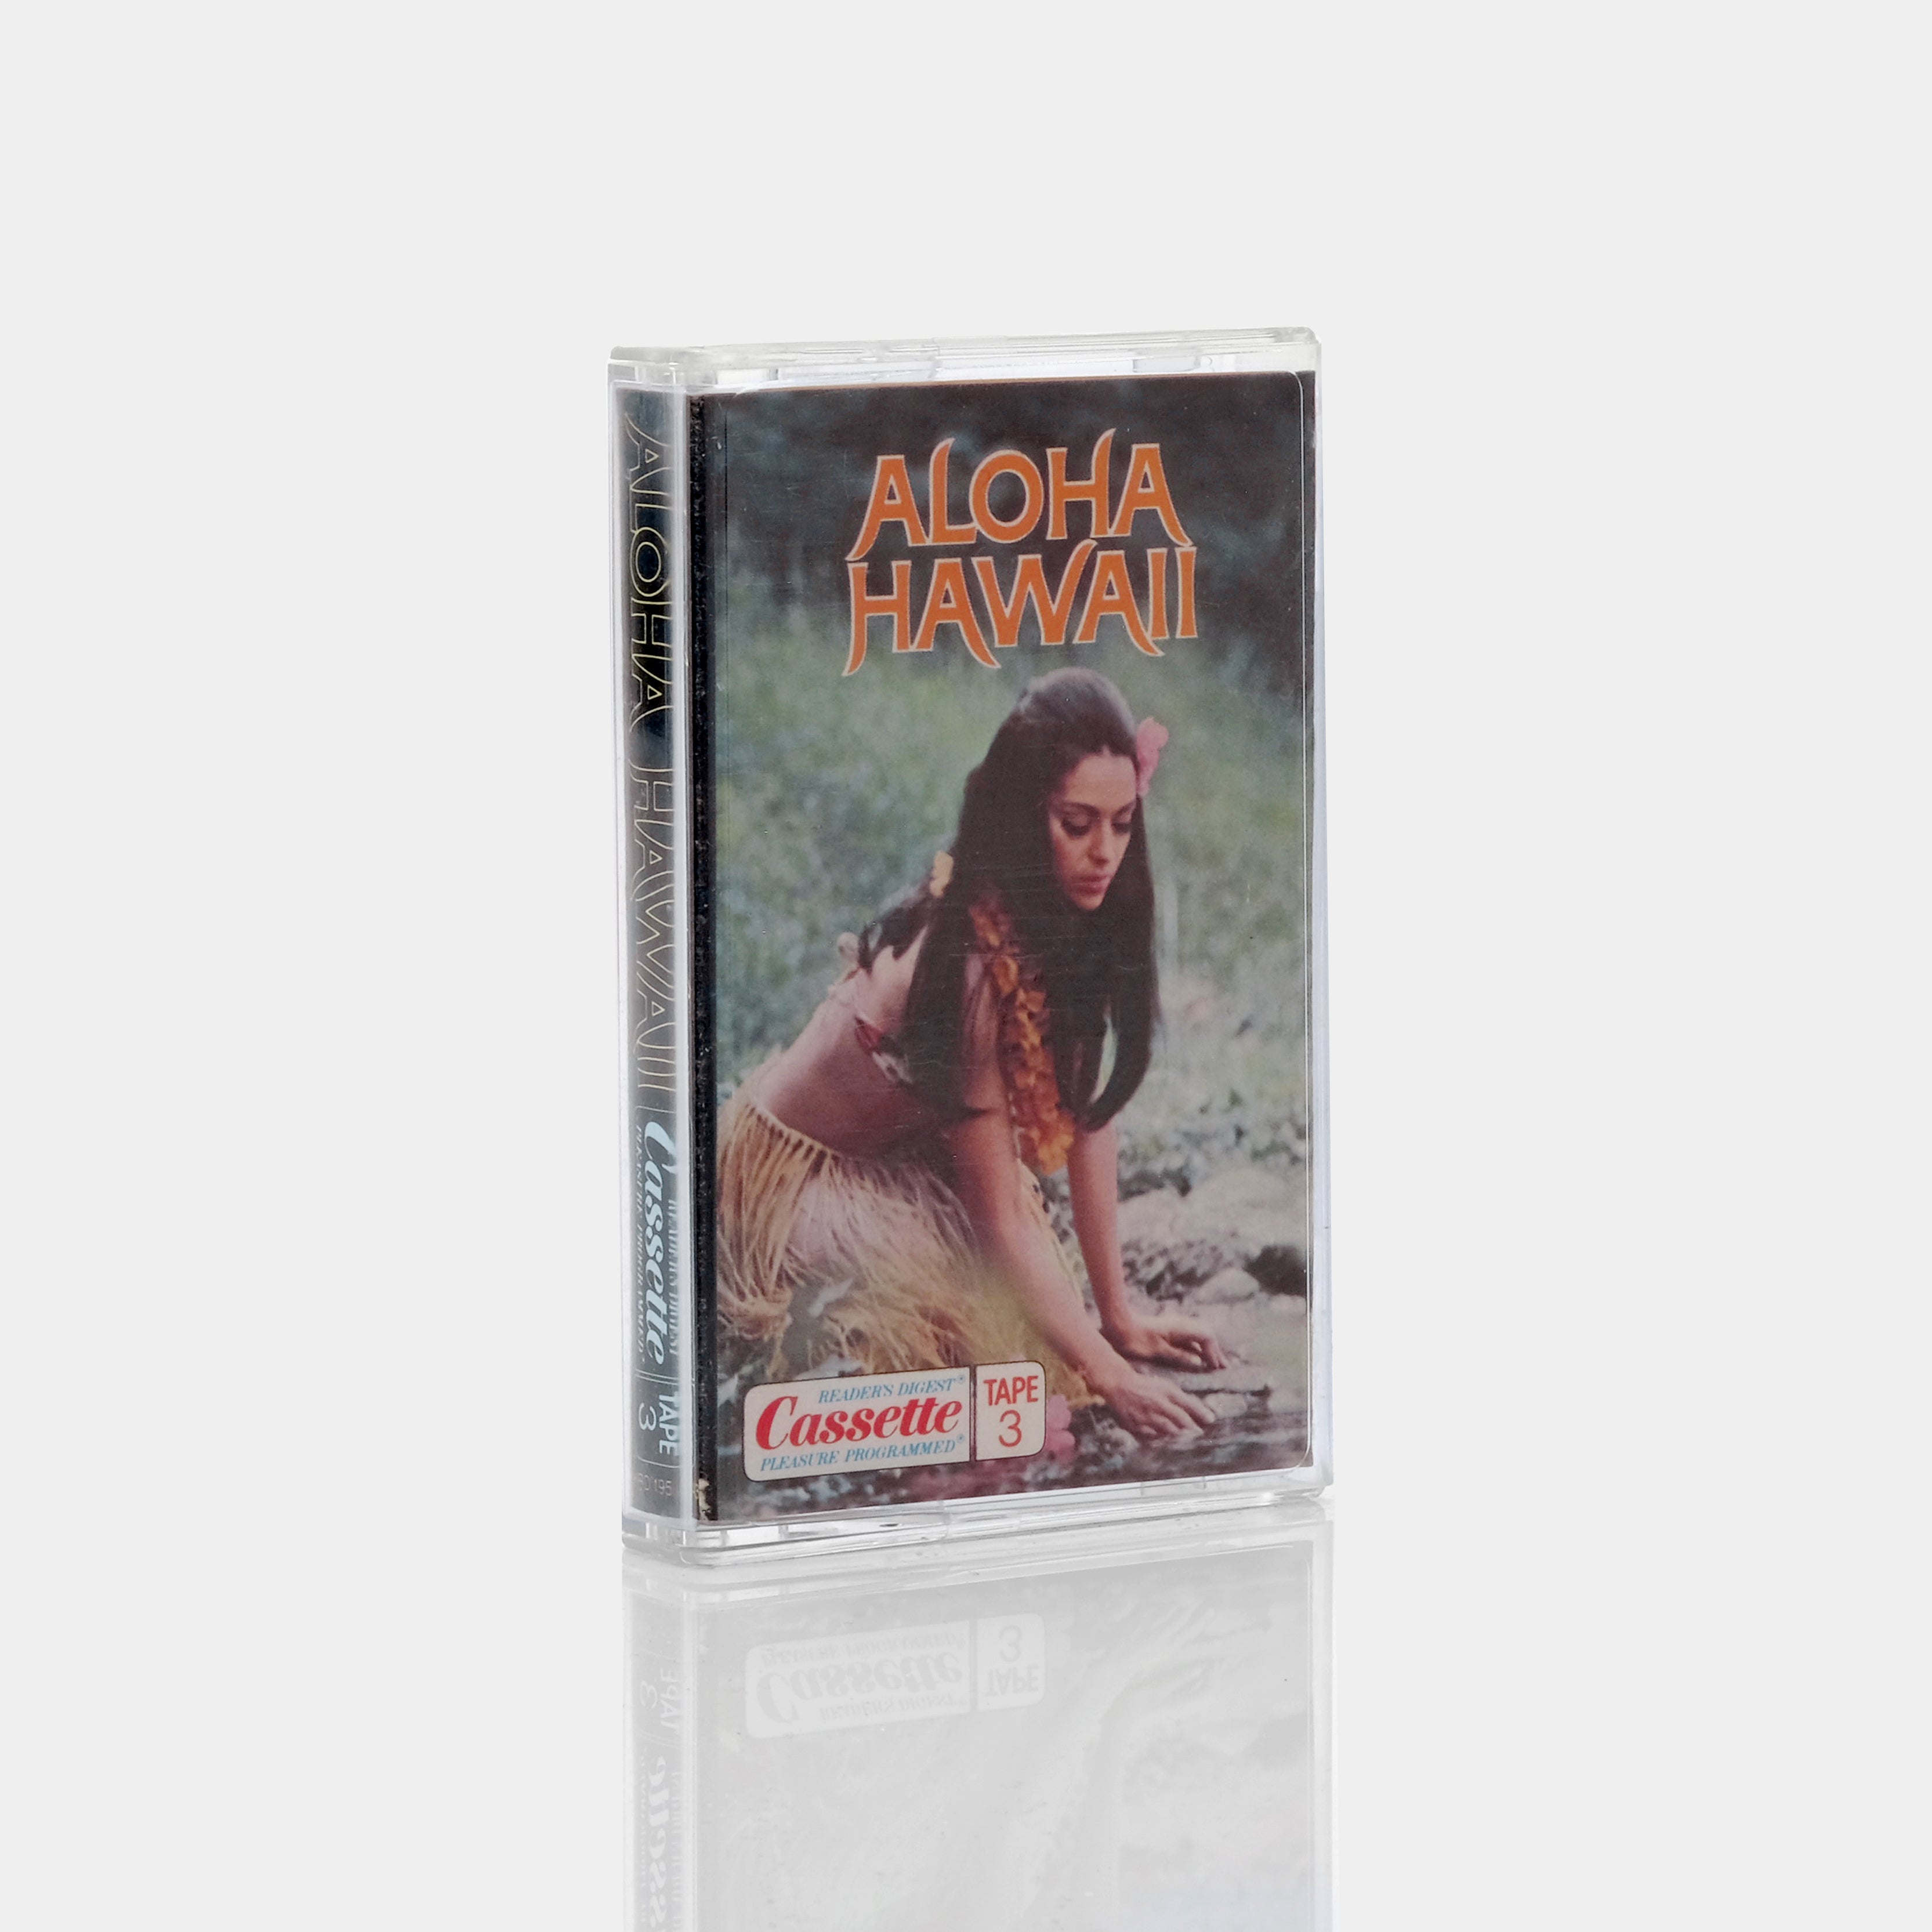 Aloha Hawaii (Tape 3) Cassette Tape